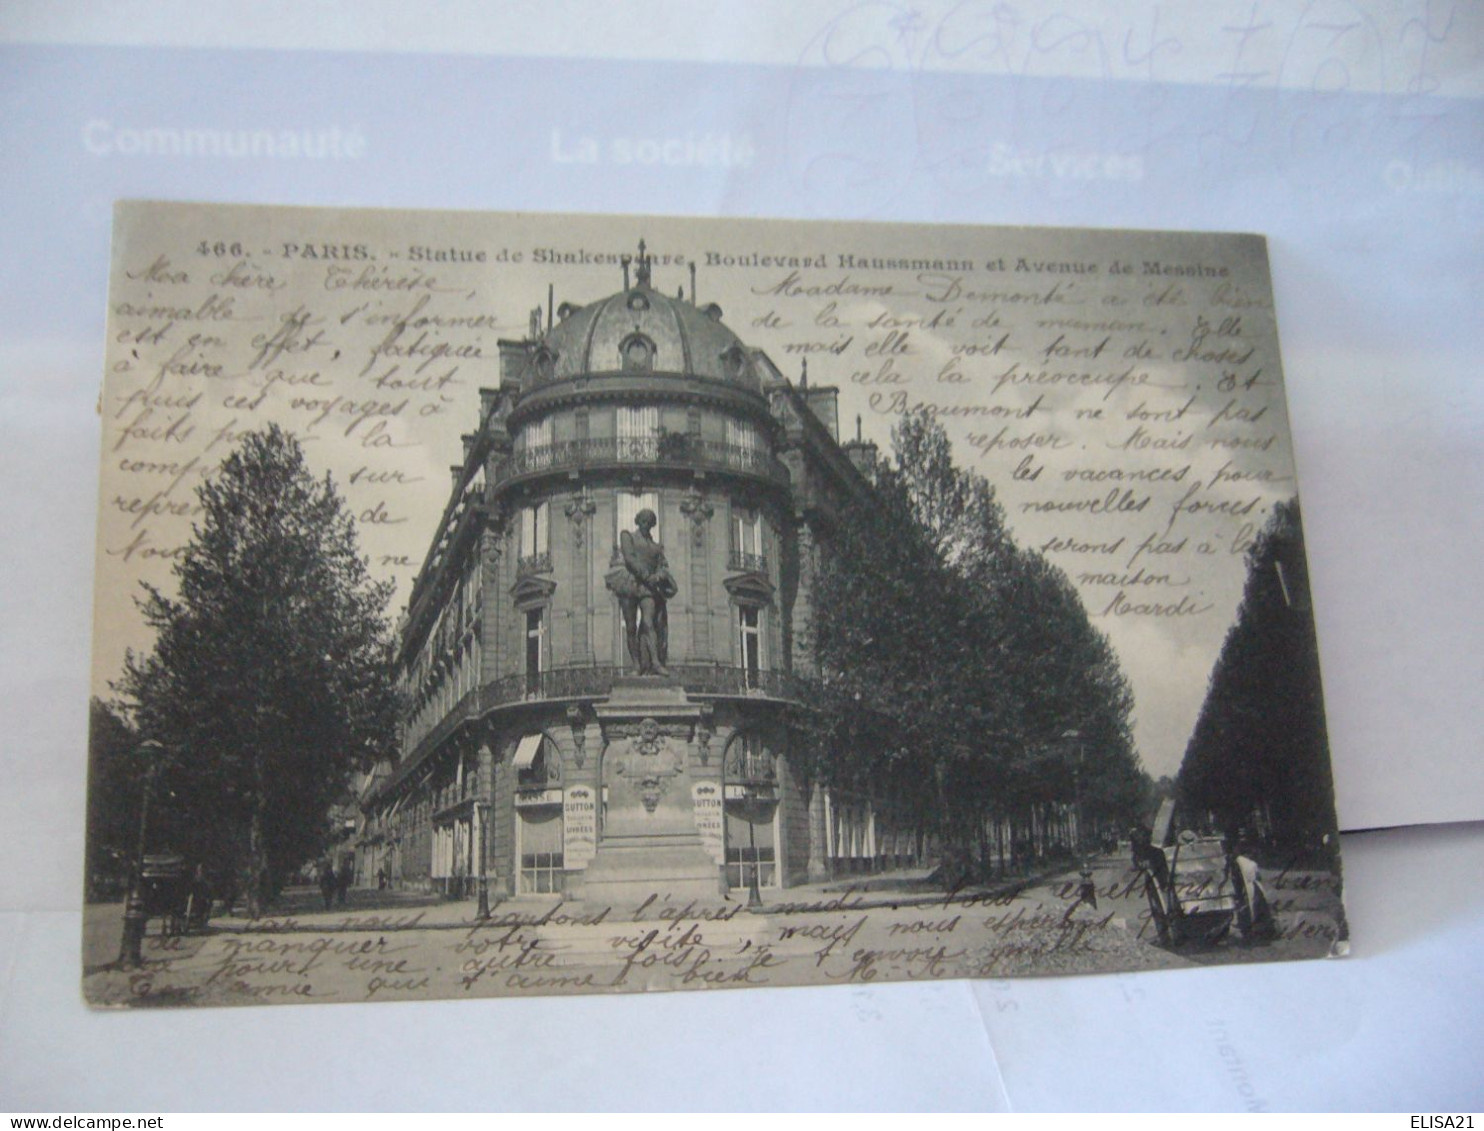 PARIS 75 PARIS STATUE DE SHAKESPEARE BOULEVARD HAUSSMANN ET AVENUE DE MESSINE CPA 1904 - Statues